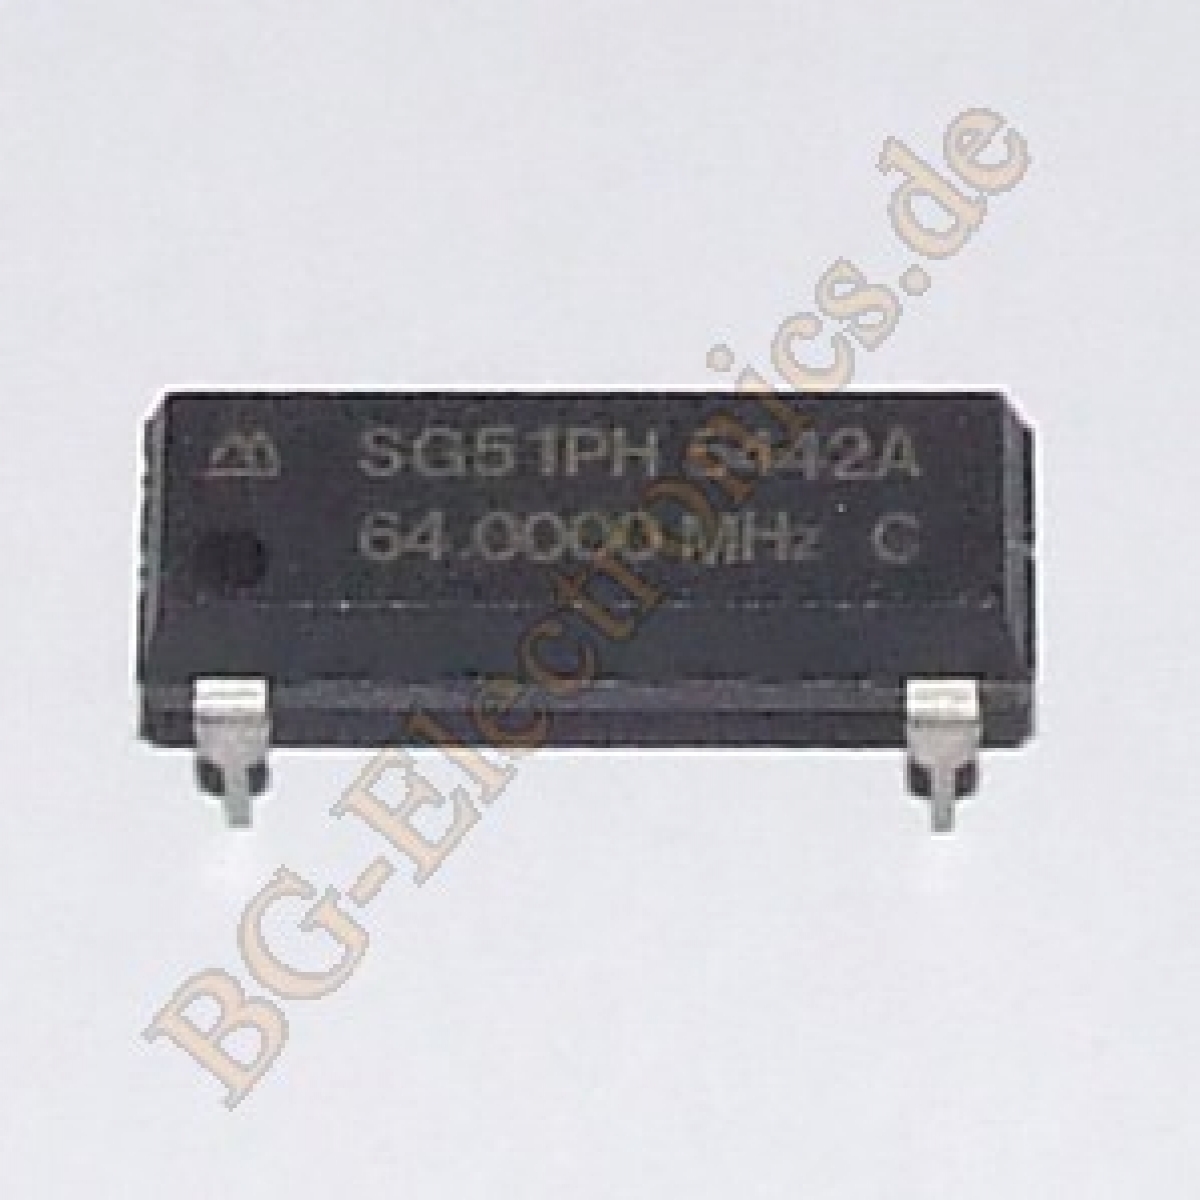 64.0000 MHz Crystal Oscillator